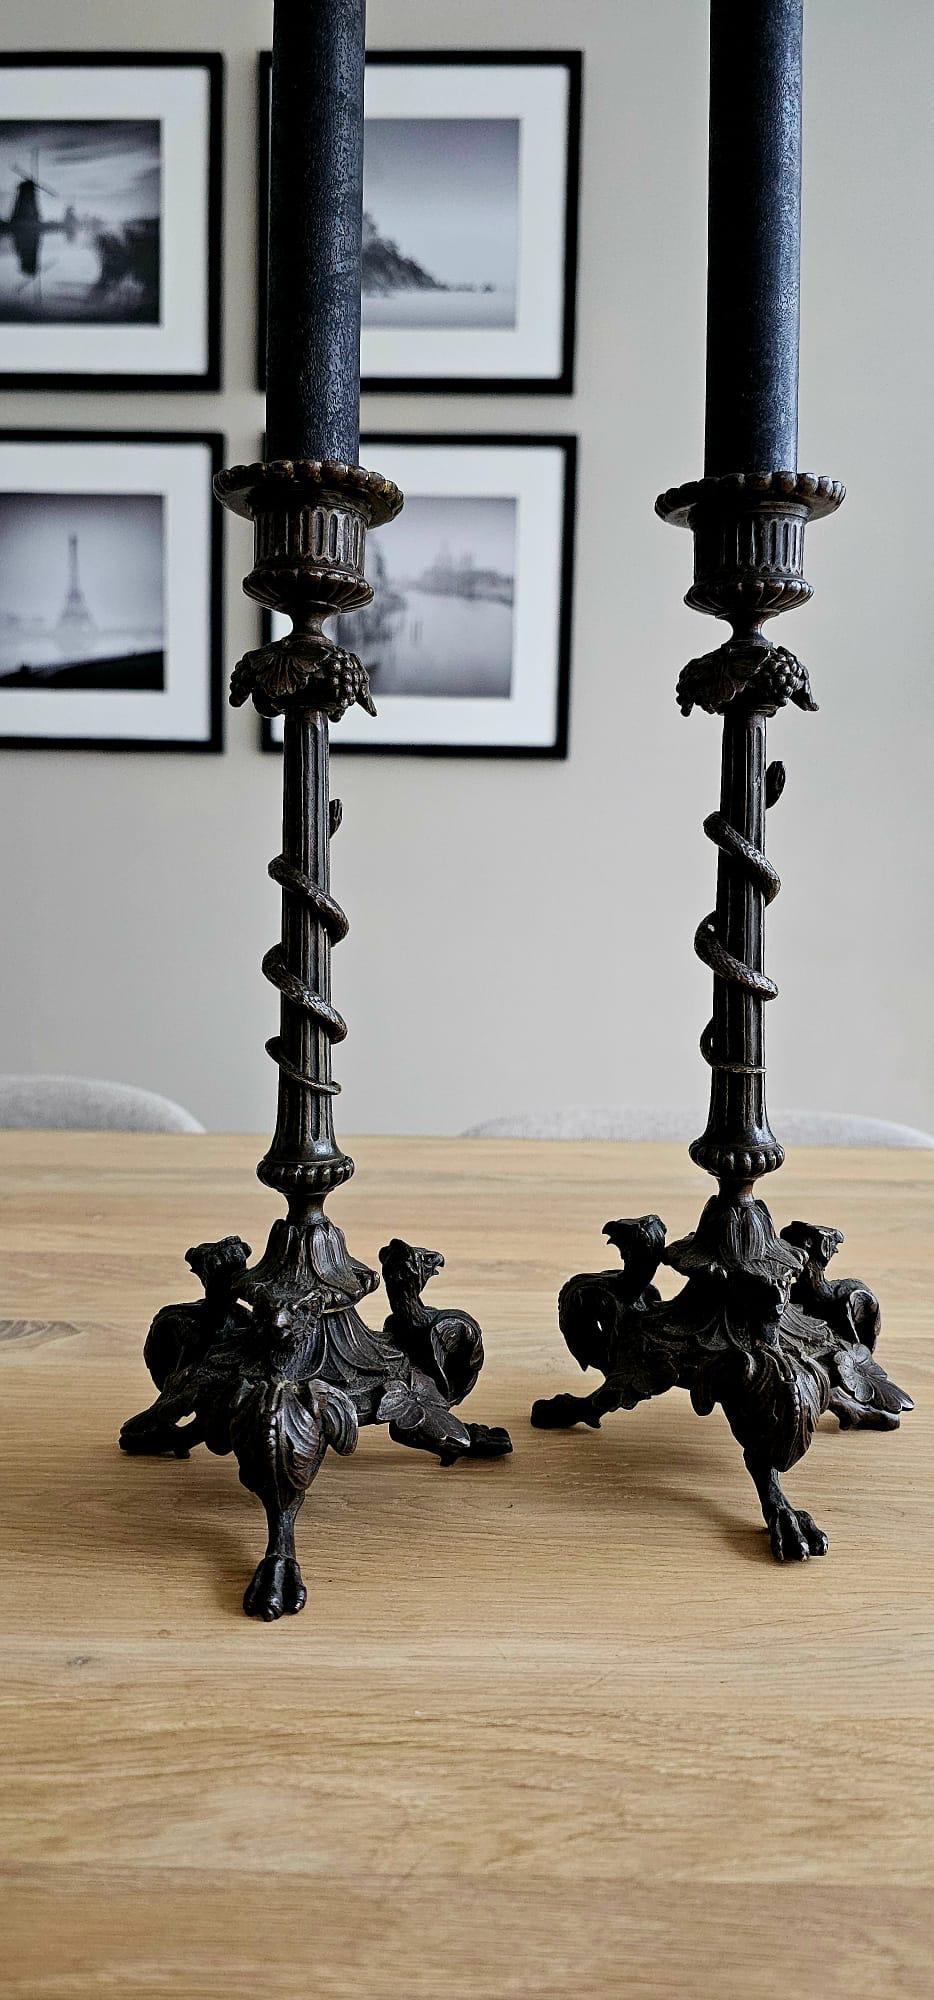 Praktische Größe, antike Kerzenhalter aus feiner Bronze mit originalen und abnehmbaren Bobeches.

Wenn Sie auf der Suche nach Antiquitäten in ausgezeichnetem Zustand sind, um die perfekte Atmosphäre zu schaffen, dann könnte dieses attraktive und